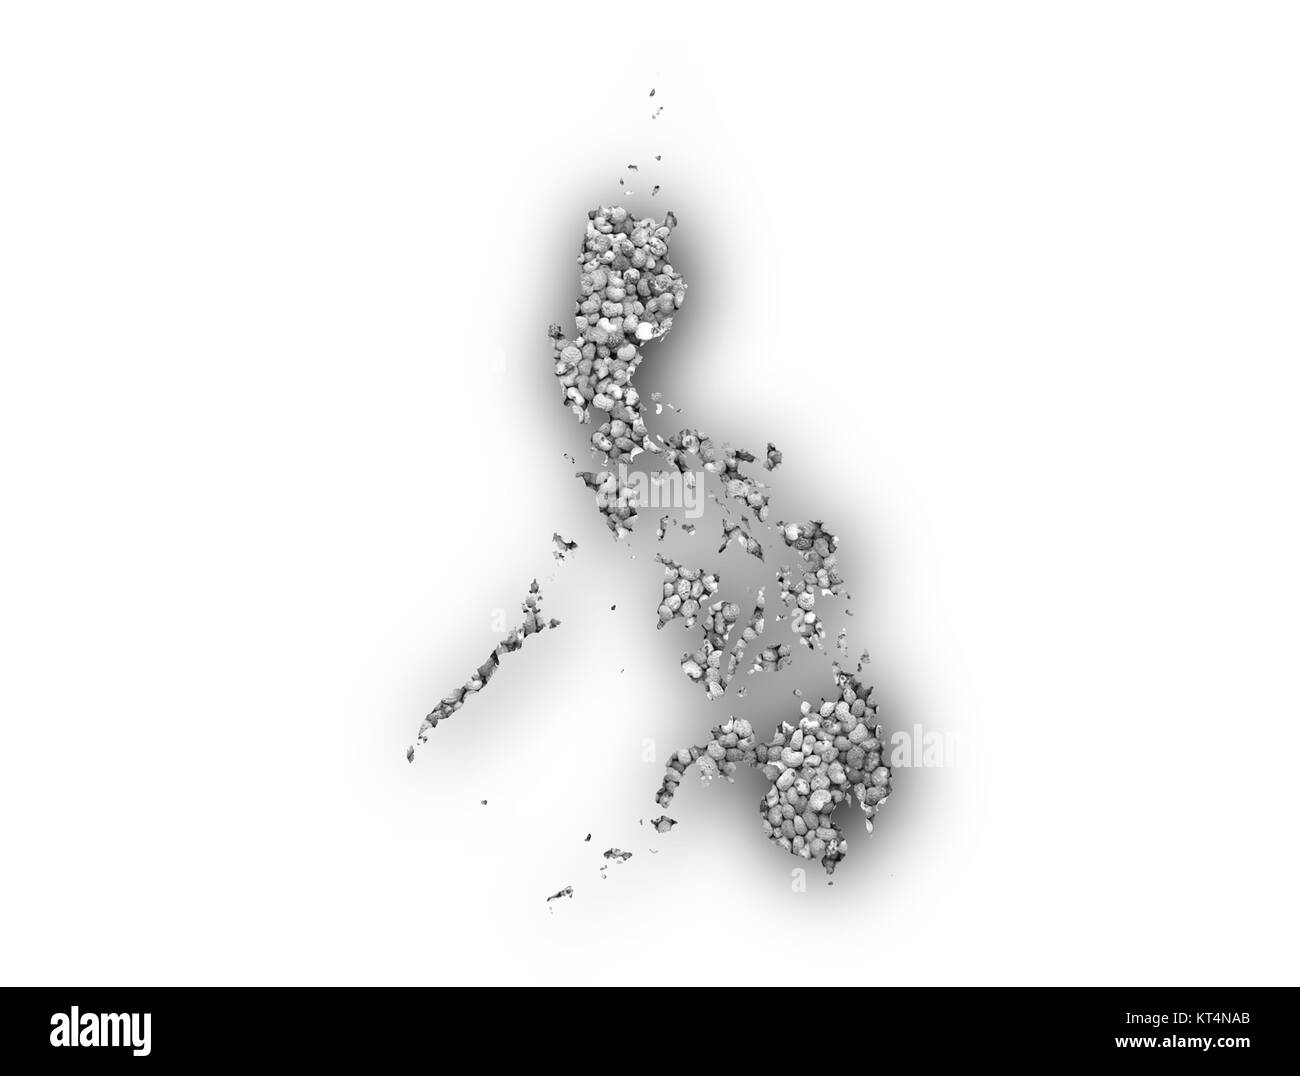 Karte der Philippinen auf Mohn Stock Photo